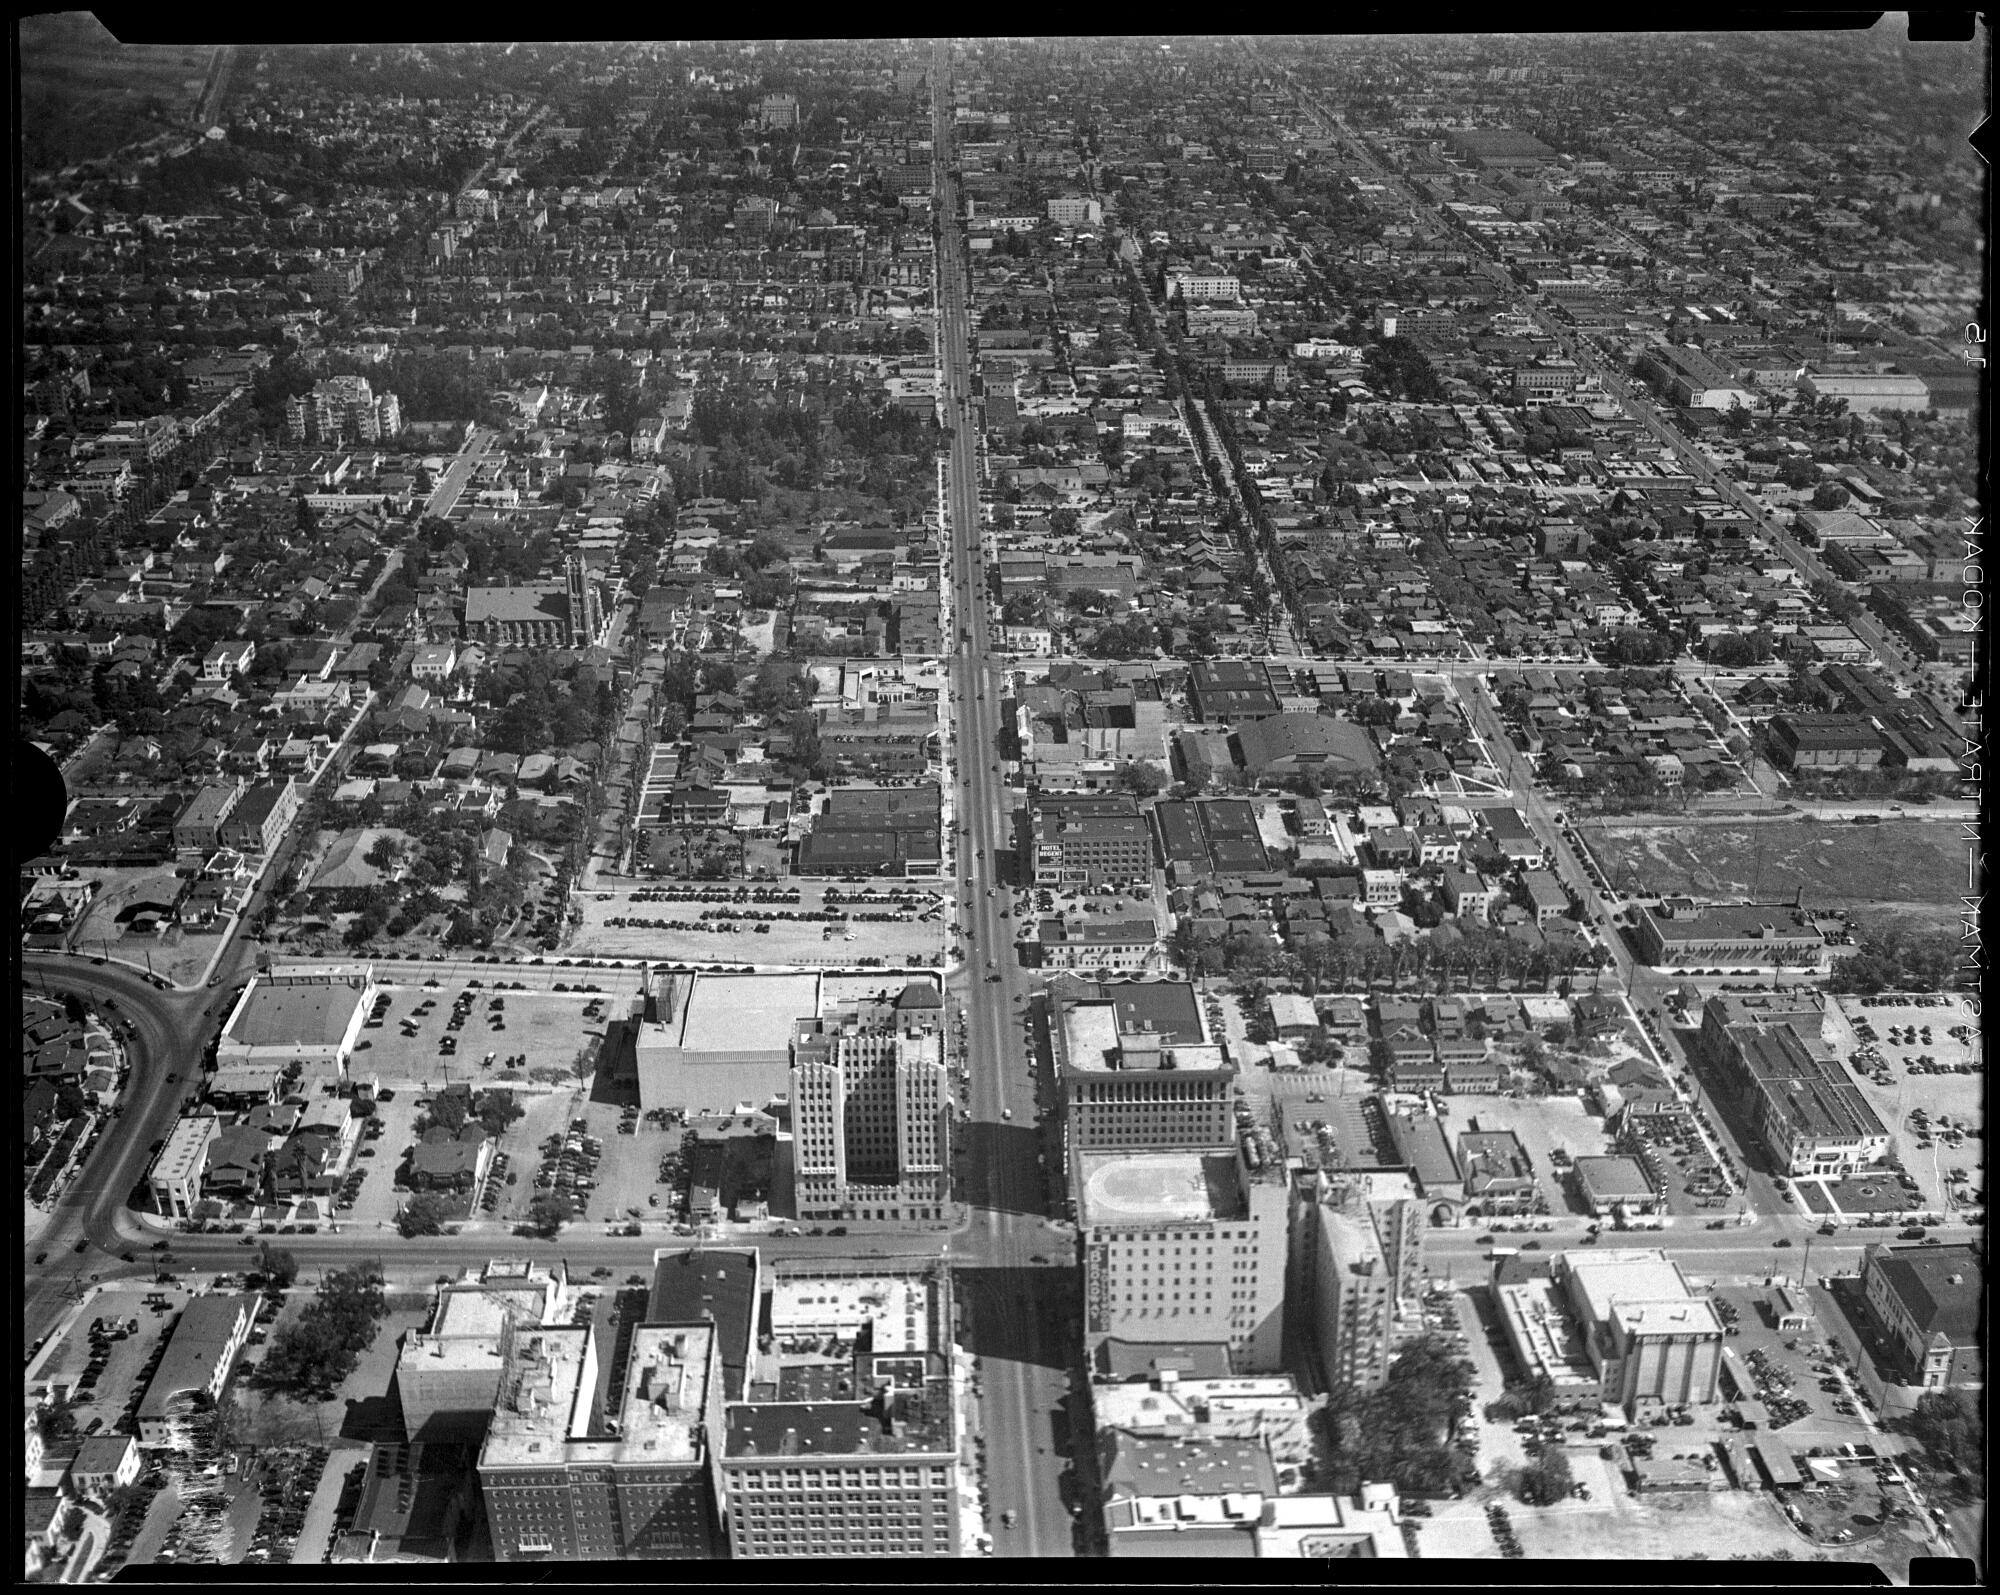 Una vista de Los ngeles, fotografiada en algún momento entre 1920 y 1935, muestra la expansión urbana tomando forma.